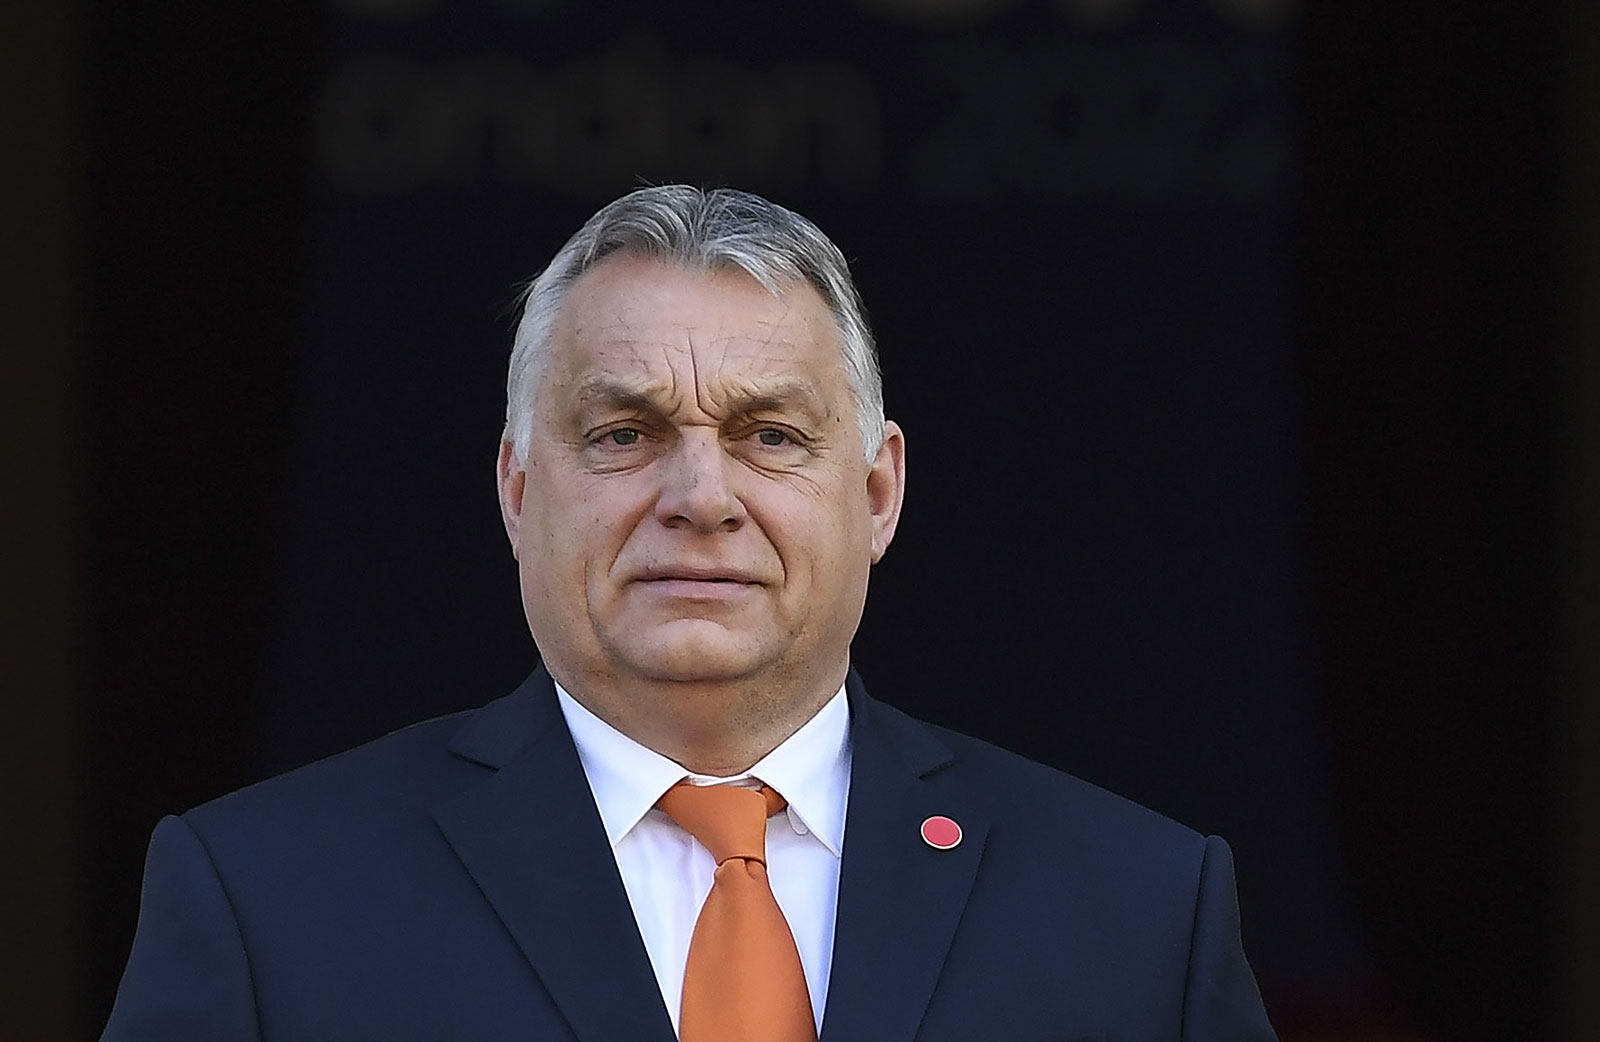 A magyar kormányfő szerint az Oroszország elleni szankciók között nem szabad az orosz energiaimport betiltását szerepeltetni